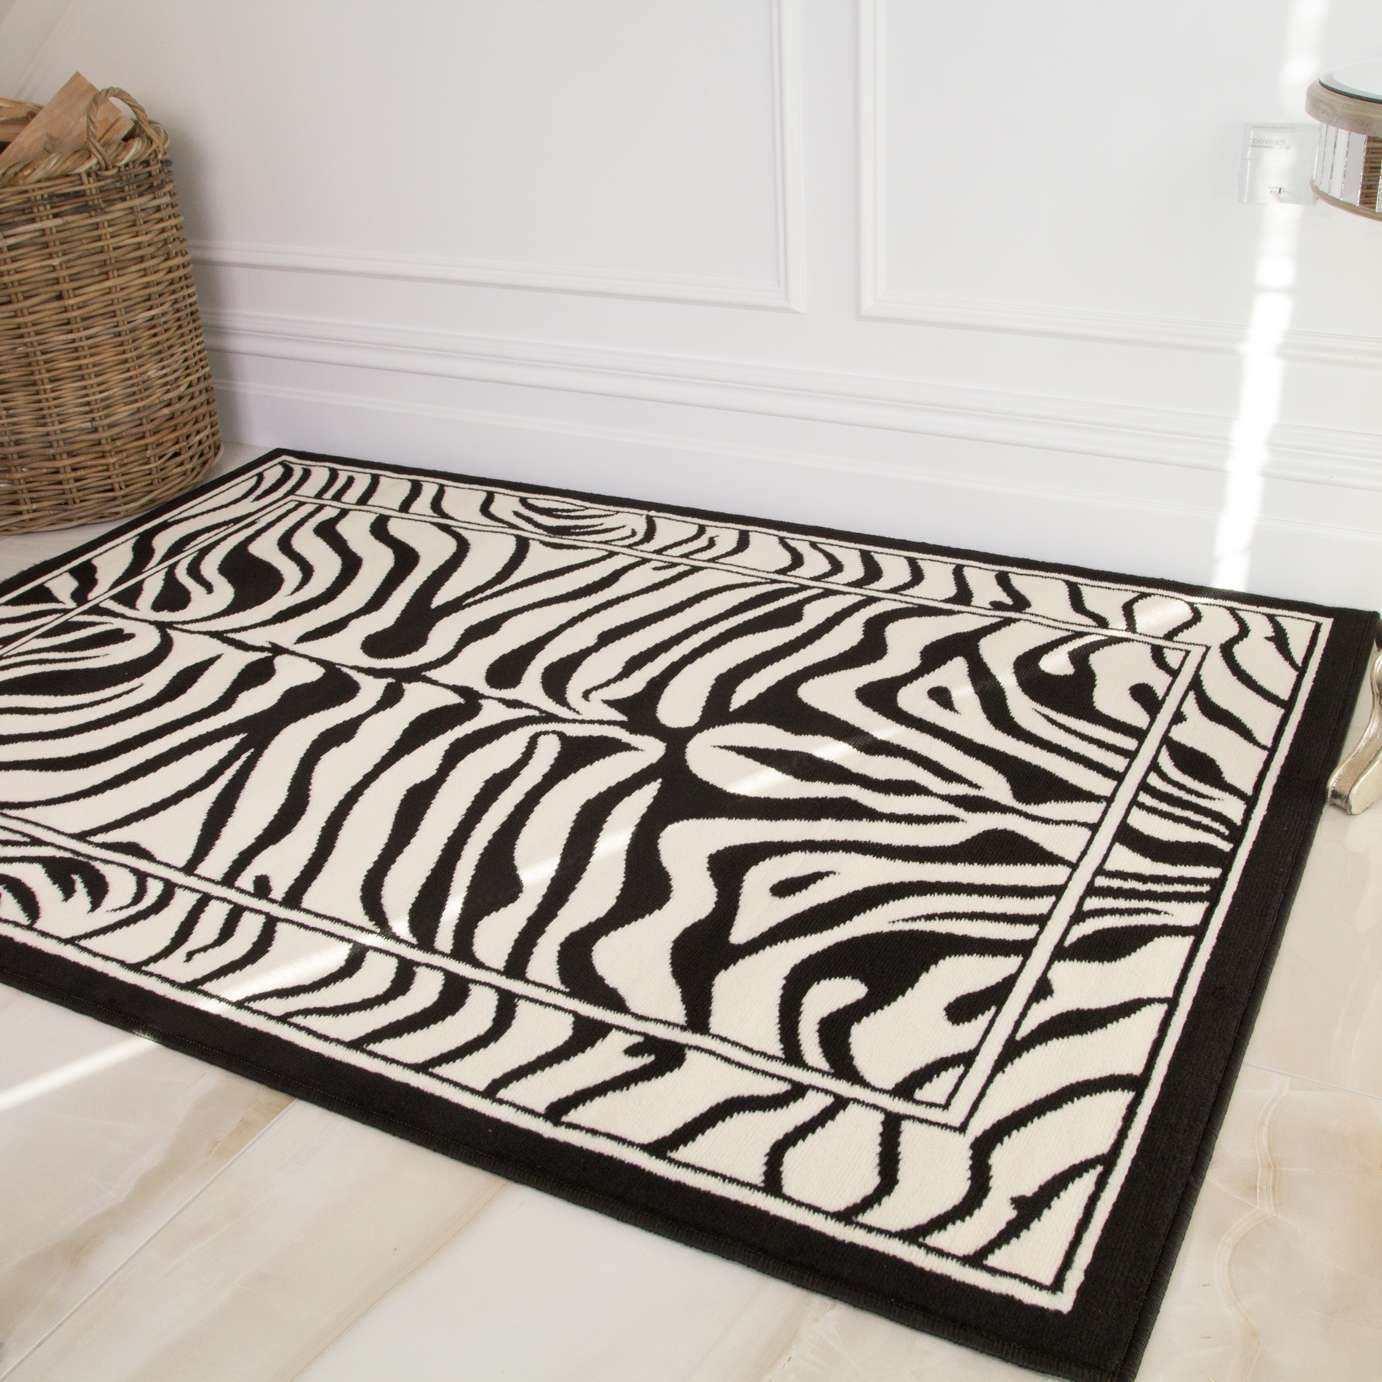 Black White Animal Zebra Print Runner Rug